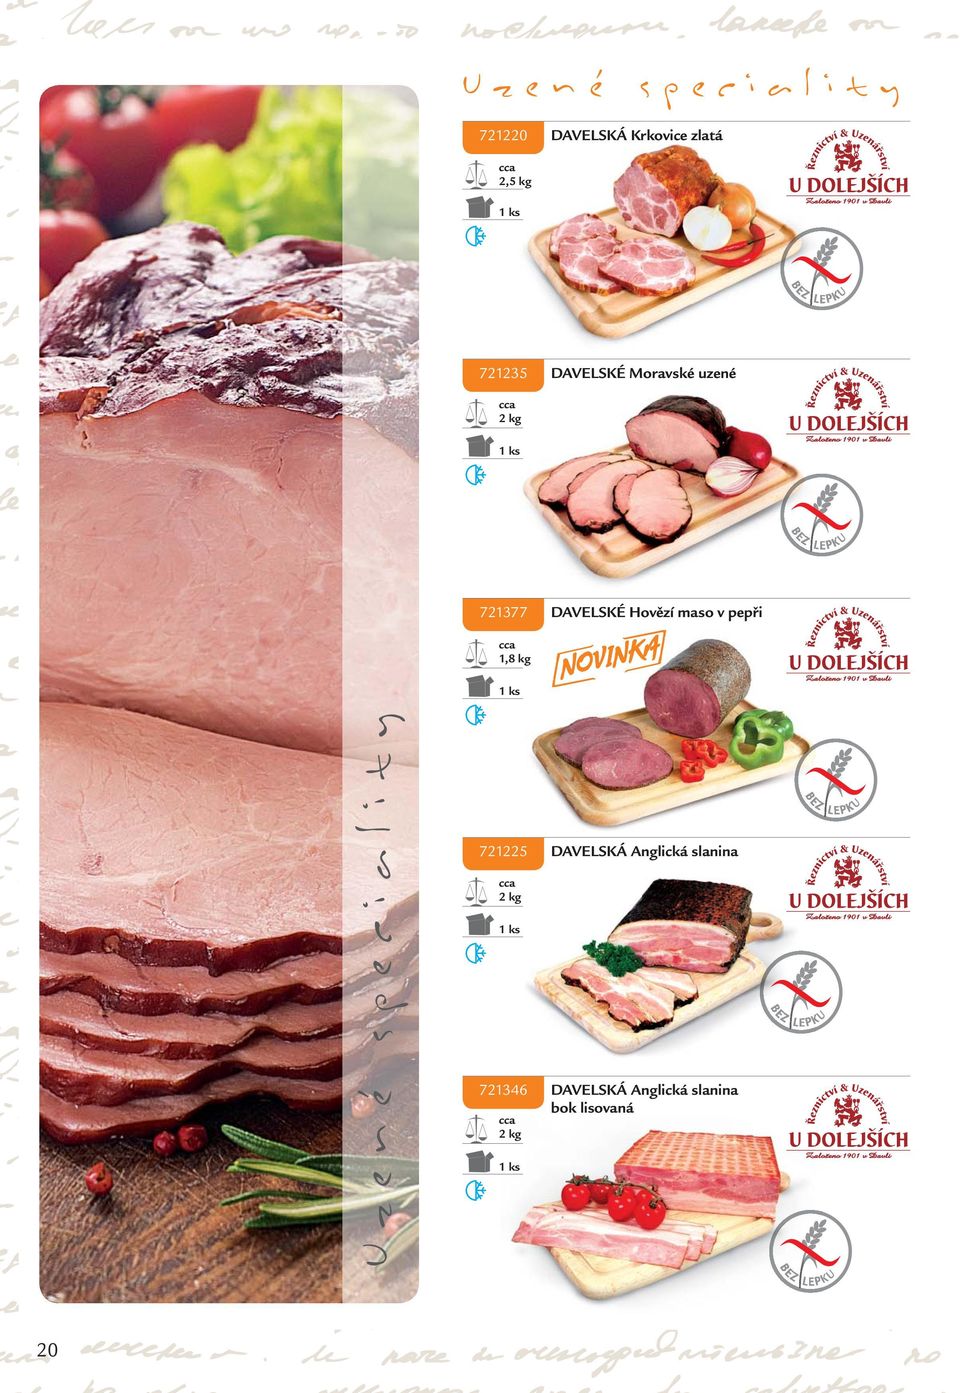 maso v pepři 1,8 kg Uzené speciality 721225 DAVELSKÁ